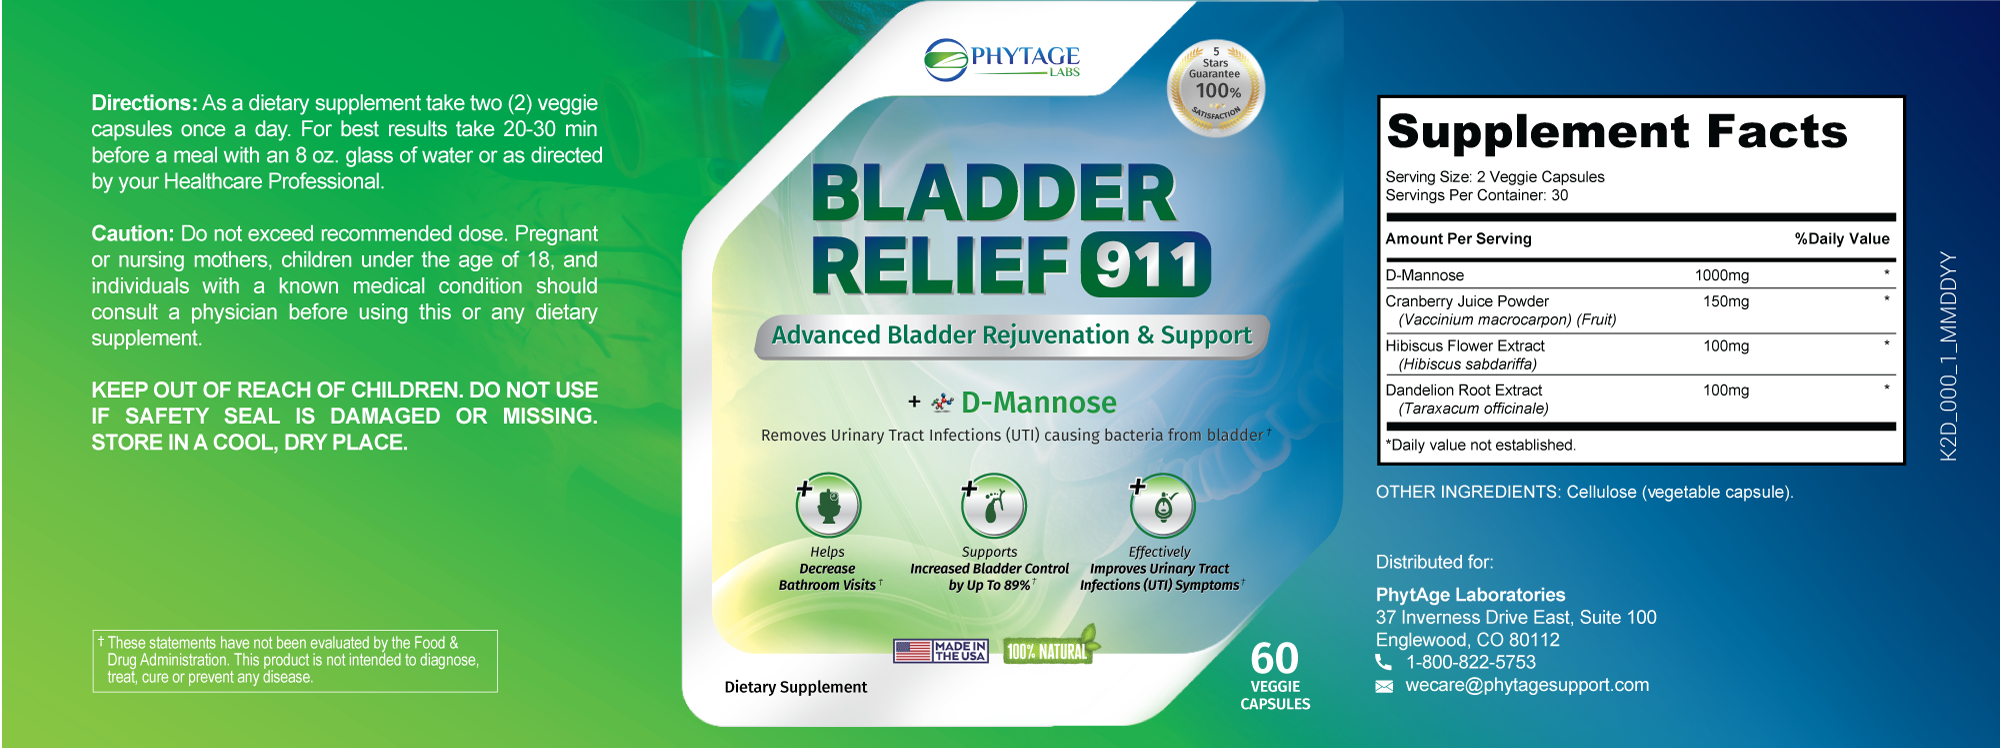 bladder relief ingredients